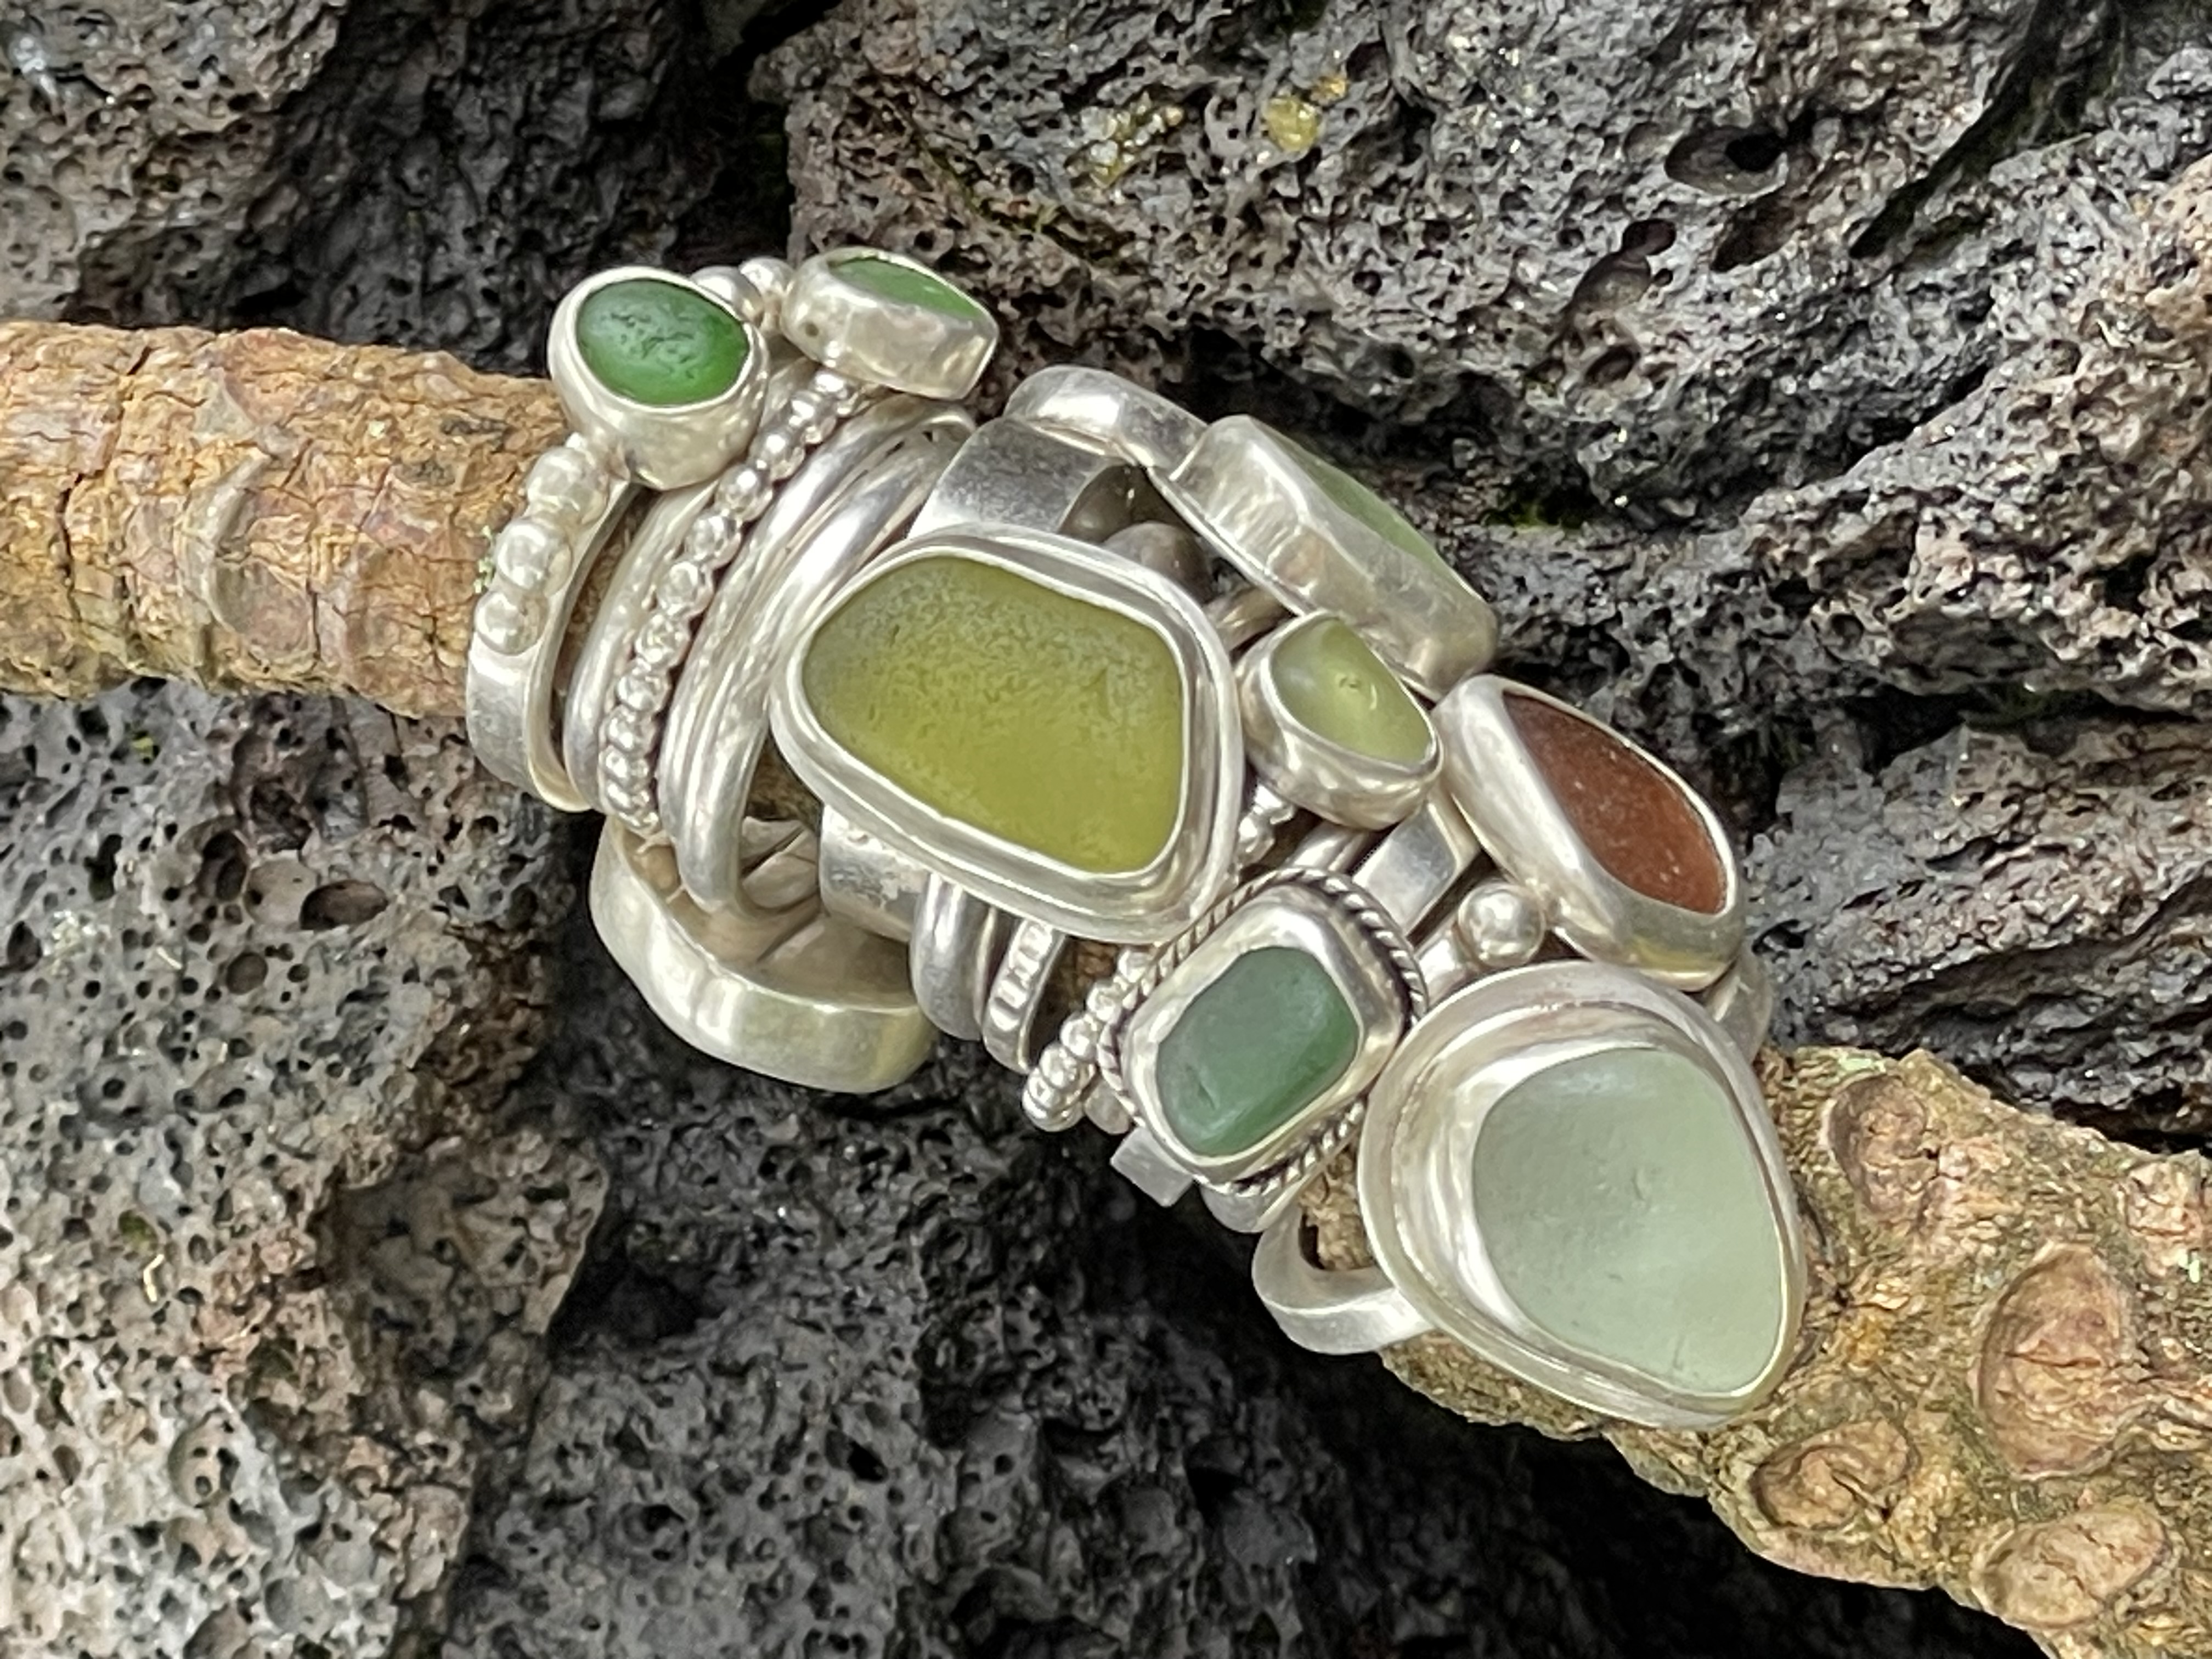 RipTide Sea Glass Jewelry, LLC